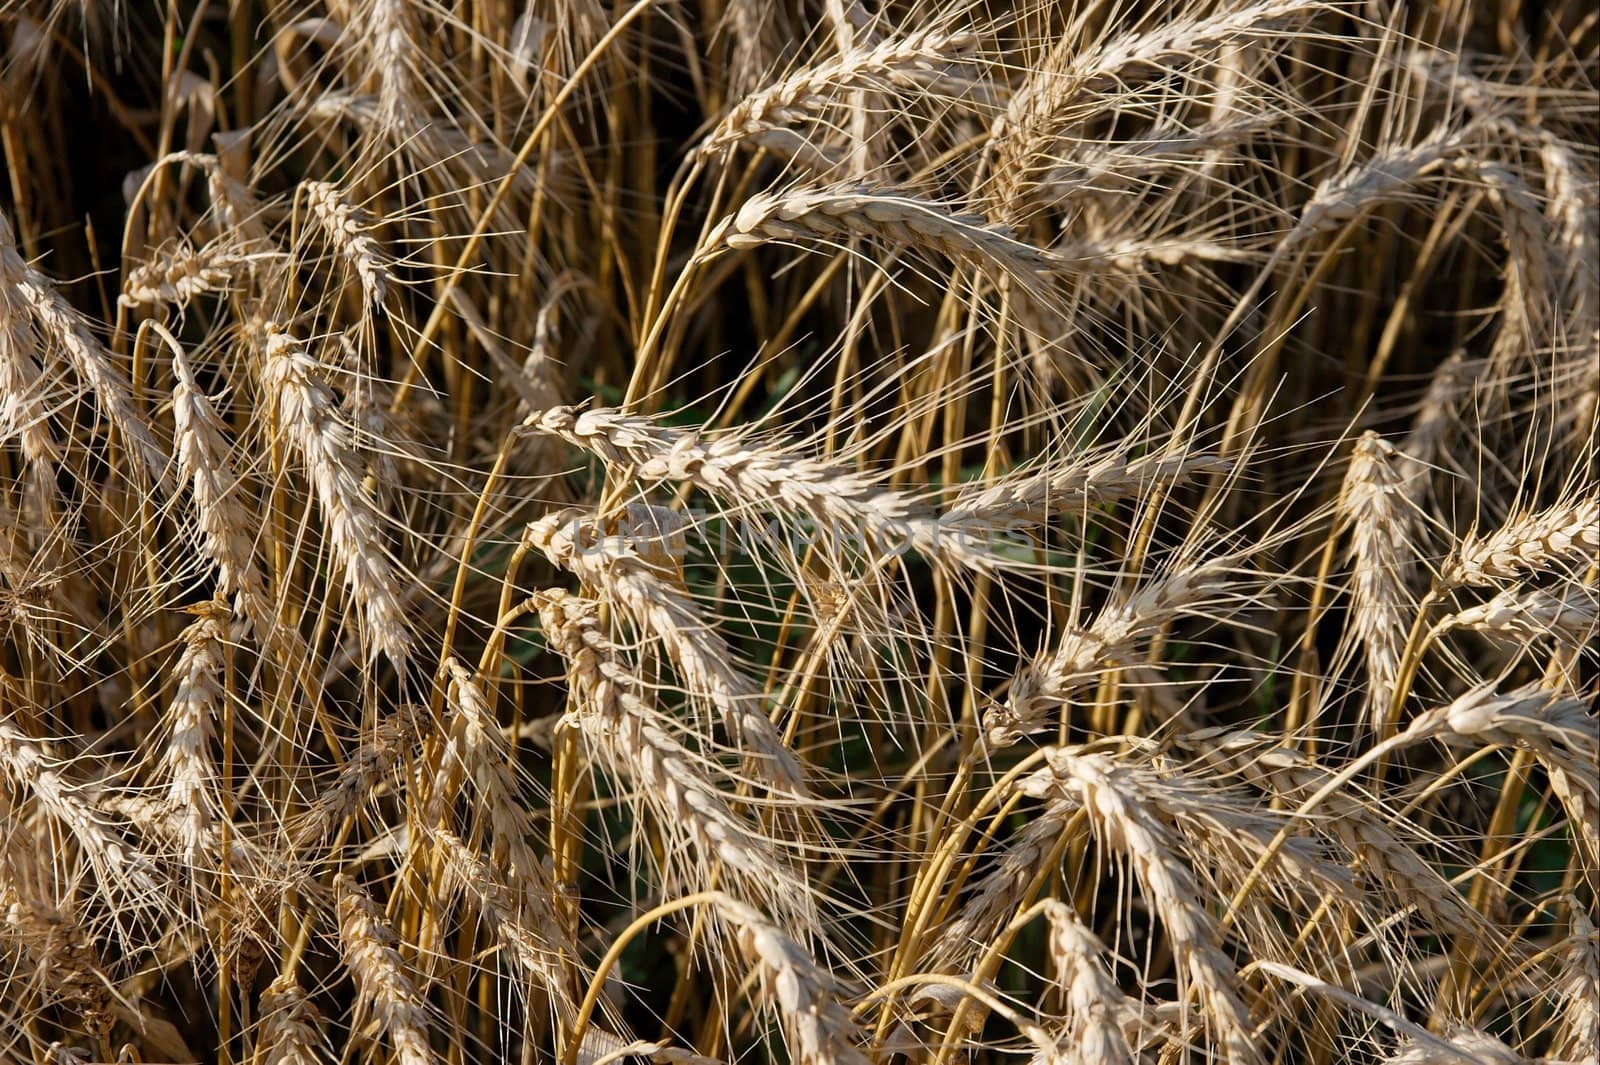 Wheat by Gudella